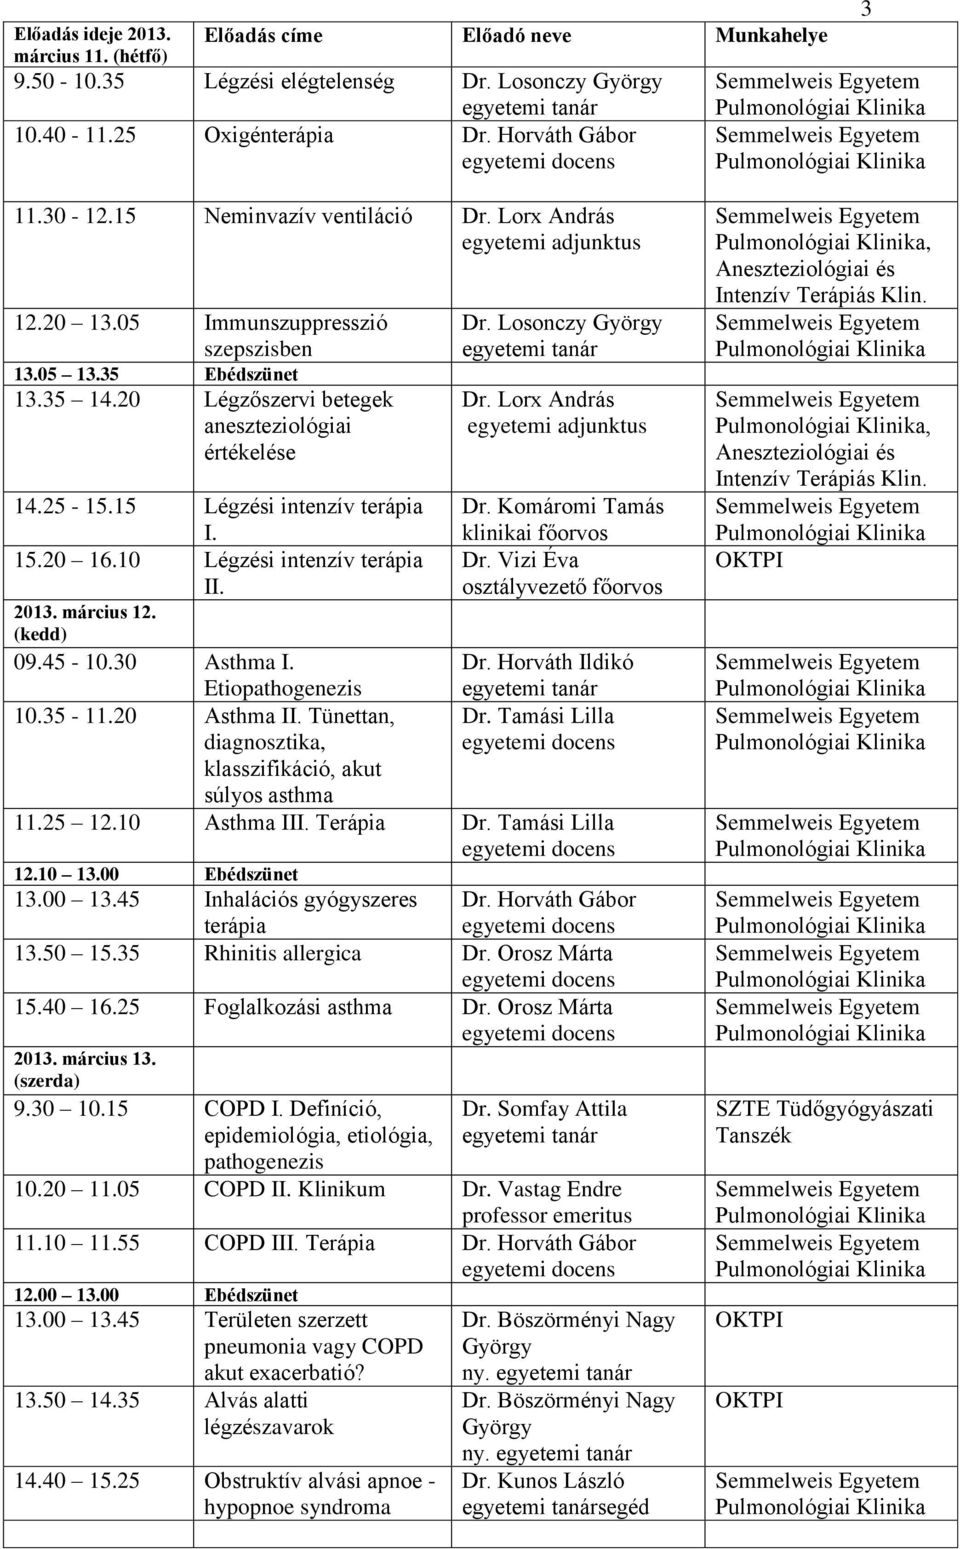 20 16.10 Légzési intenzív terápia Dr. Vizi Éva II. osztályvezető 2013. március 12. (kedd) 09.45-10.30 Asthma I. Dr. Horváth Ildikó Etiopathogenezis 10.35-11.20 Asthma II. Tünettan, Dr.